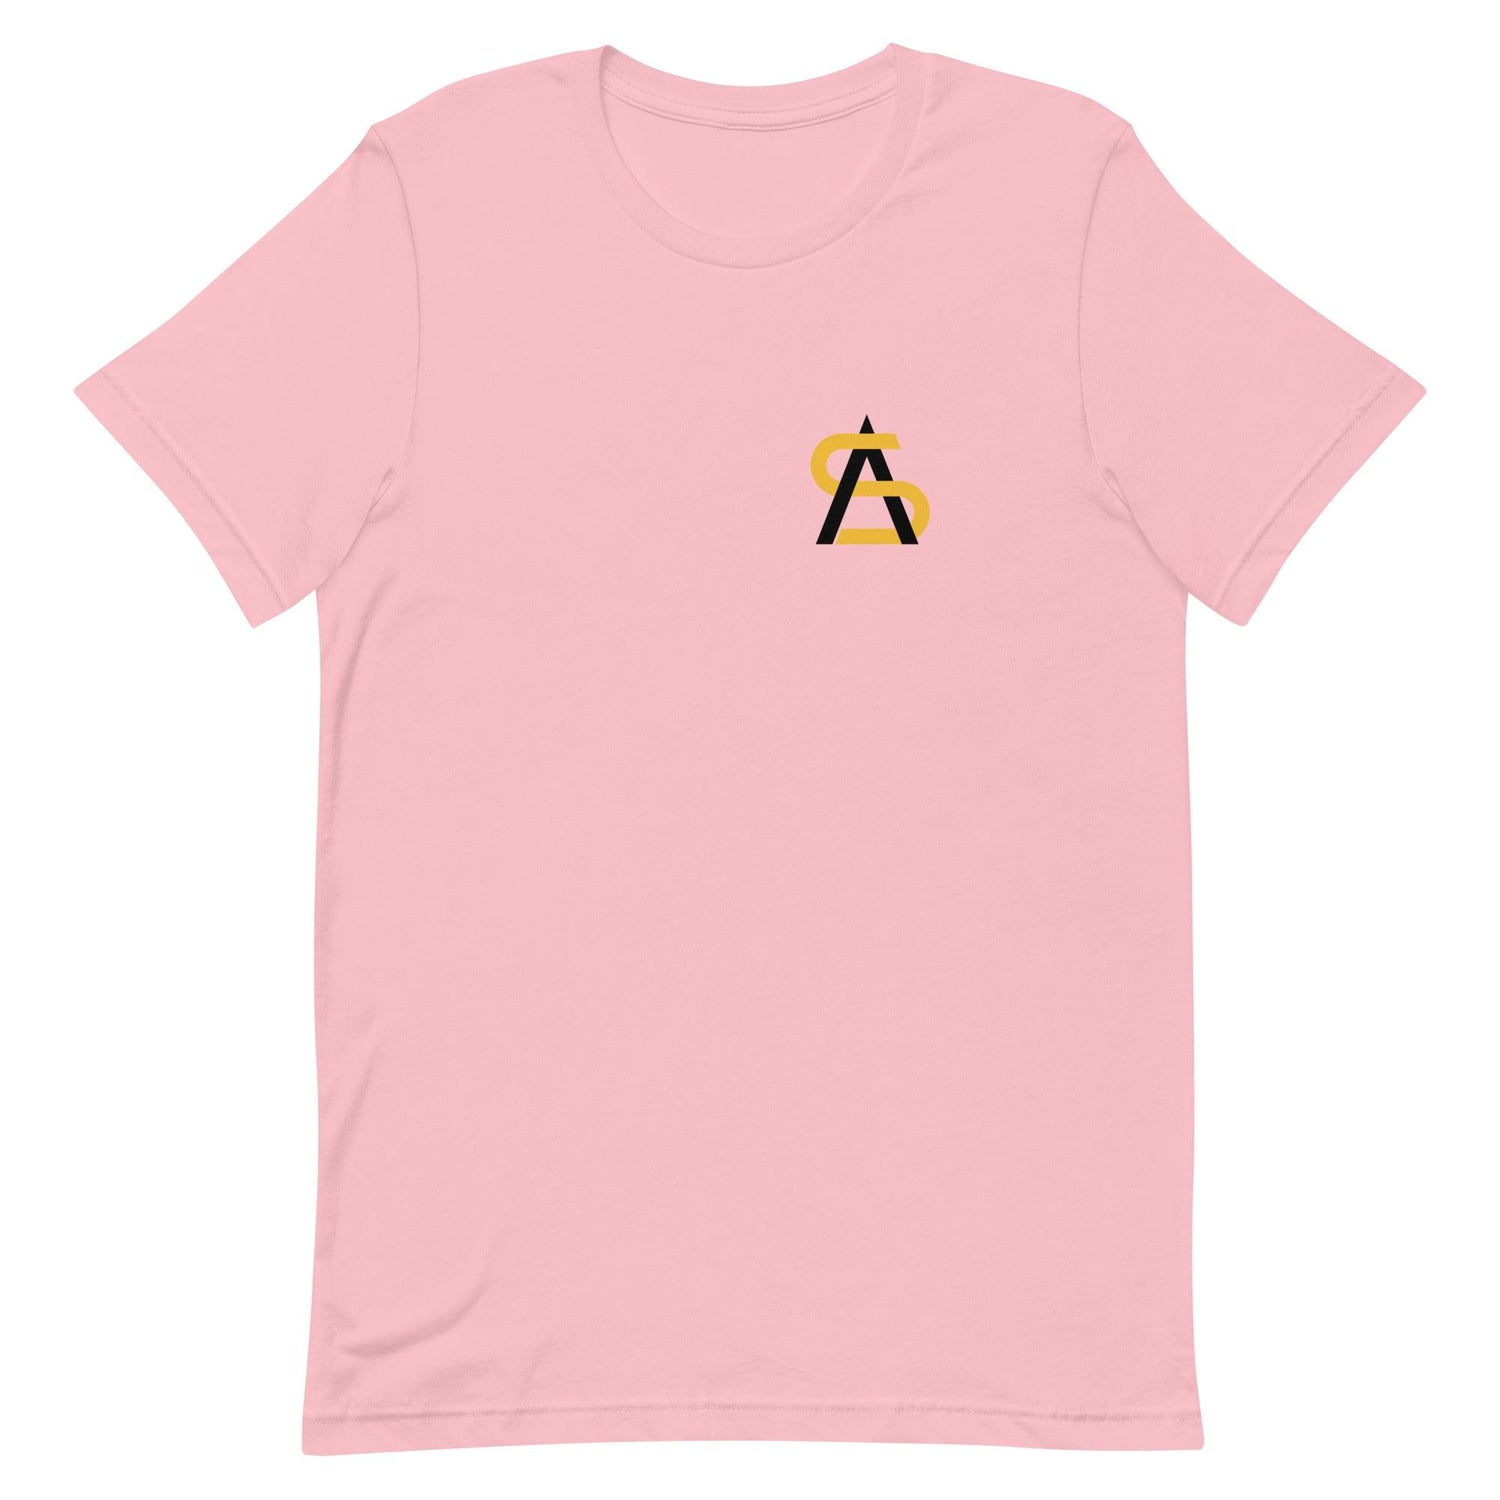 Adam Sparks "Essential" t-shirt - Fan Arch